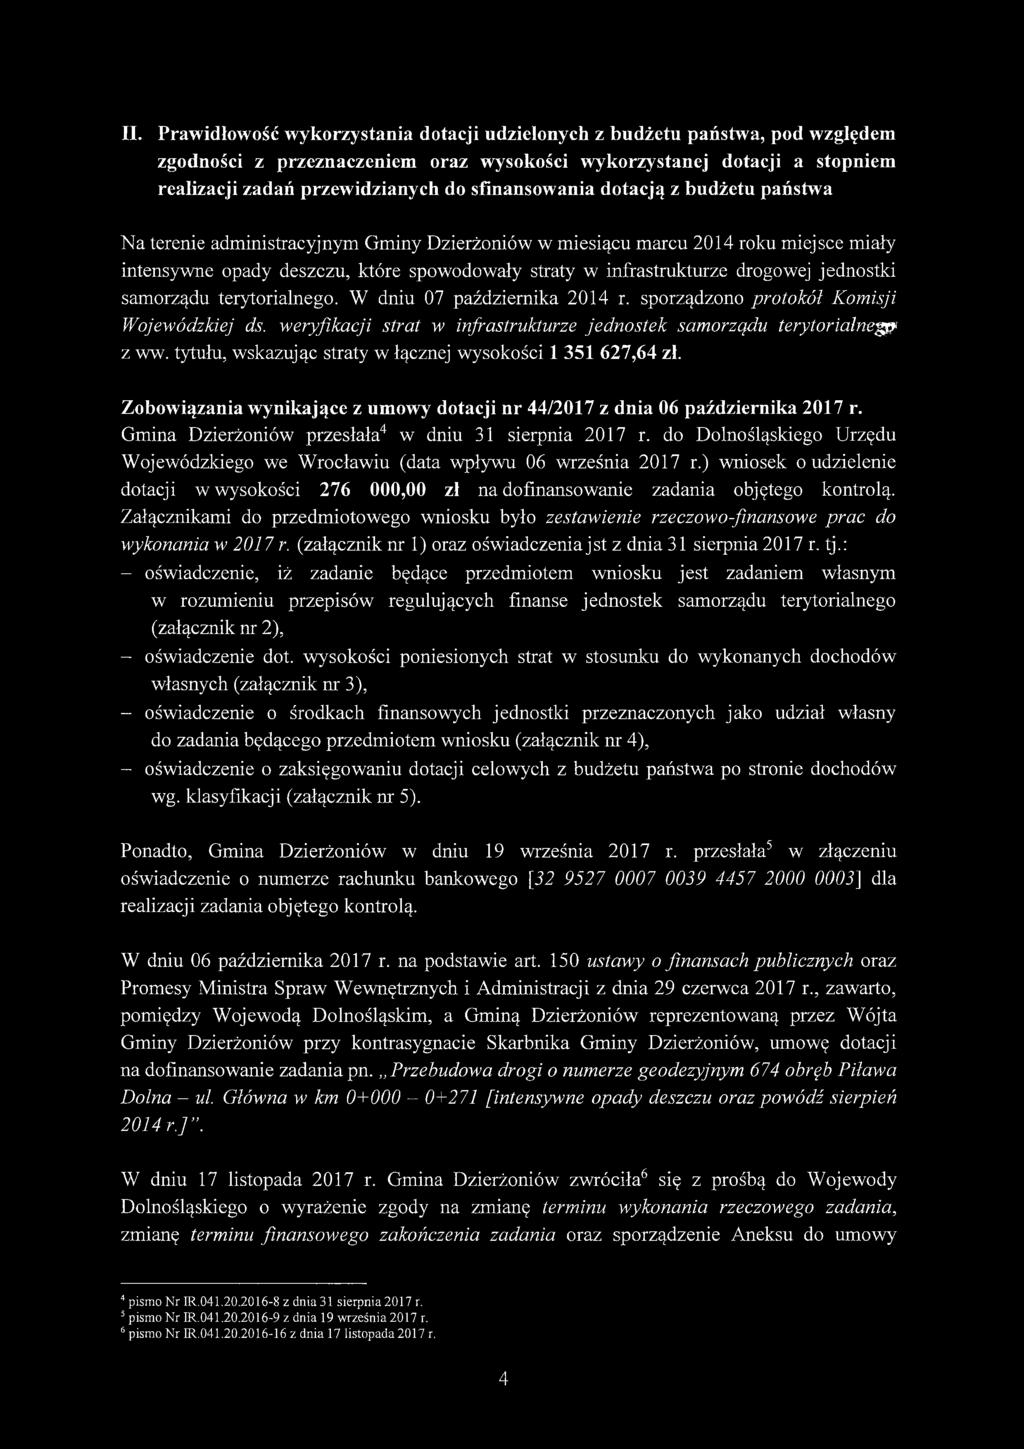 drogowej jednostki samorządu terytorialnego. W dniu 07 października 2014 r. sporządzono protokół Komisji Wojewódzkiej ds. weryfikacji strat w infrastrukturze jednostek samorządu terytorialnego z ww.